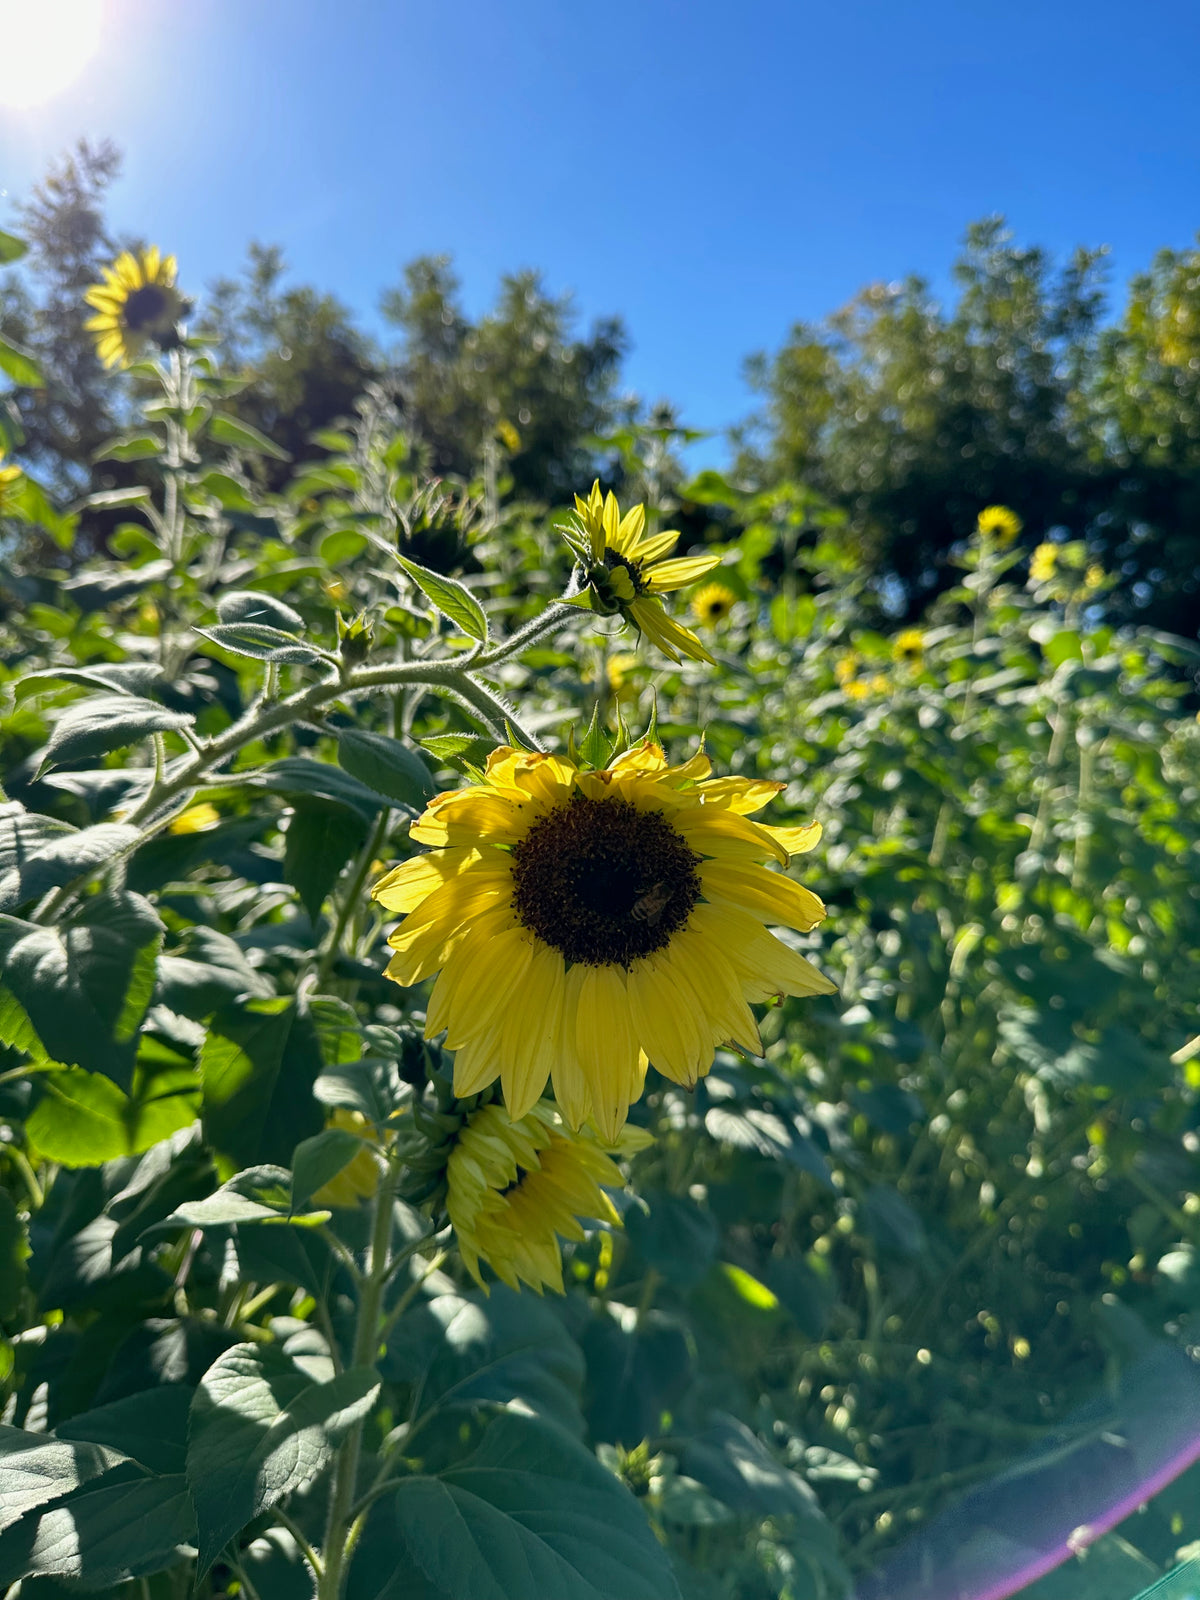 Lemon Queen Sunflower in Field